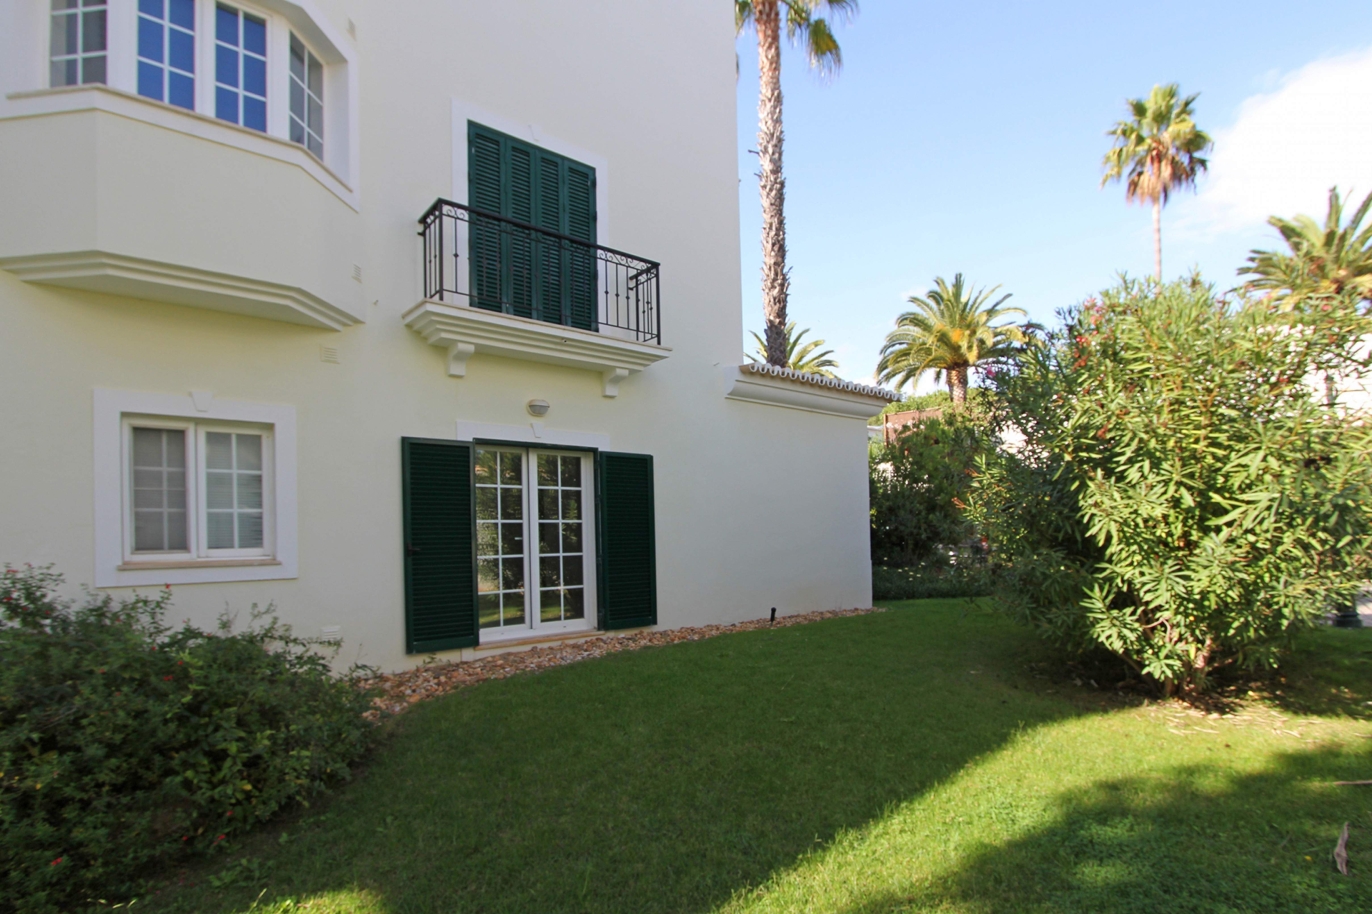 Apartamento en venta, cerca de playa, Vale do Lobo, Algarve, Portugal_120380